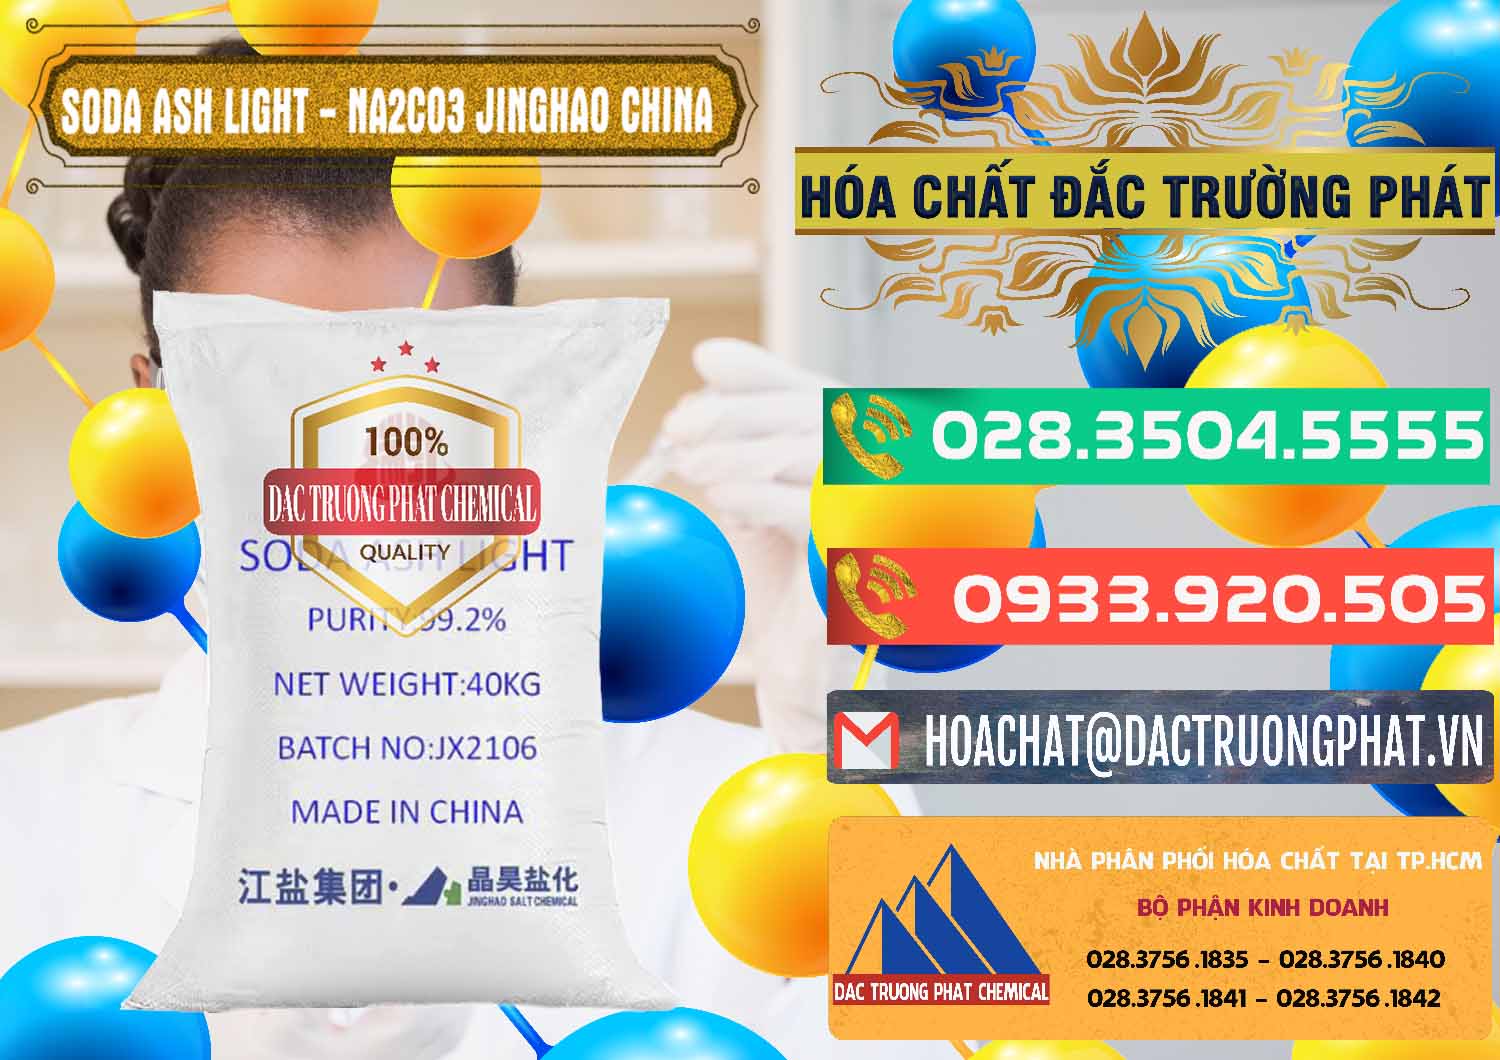 Chuyên cung ứng và bán Soda Ash Light - NA2CO3 Jinghao Trung Quốc China - 0339 - Nơi chuyên nhập khẩu & phân phối hóa chất tại TP.HCM - congtyhoachat.com.vn